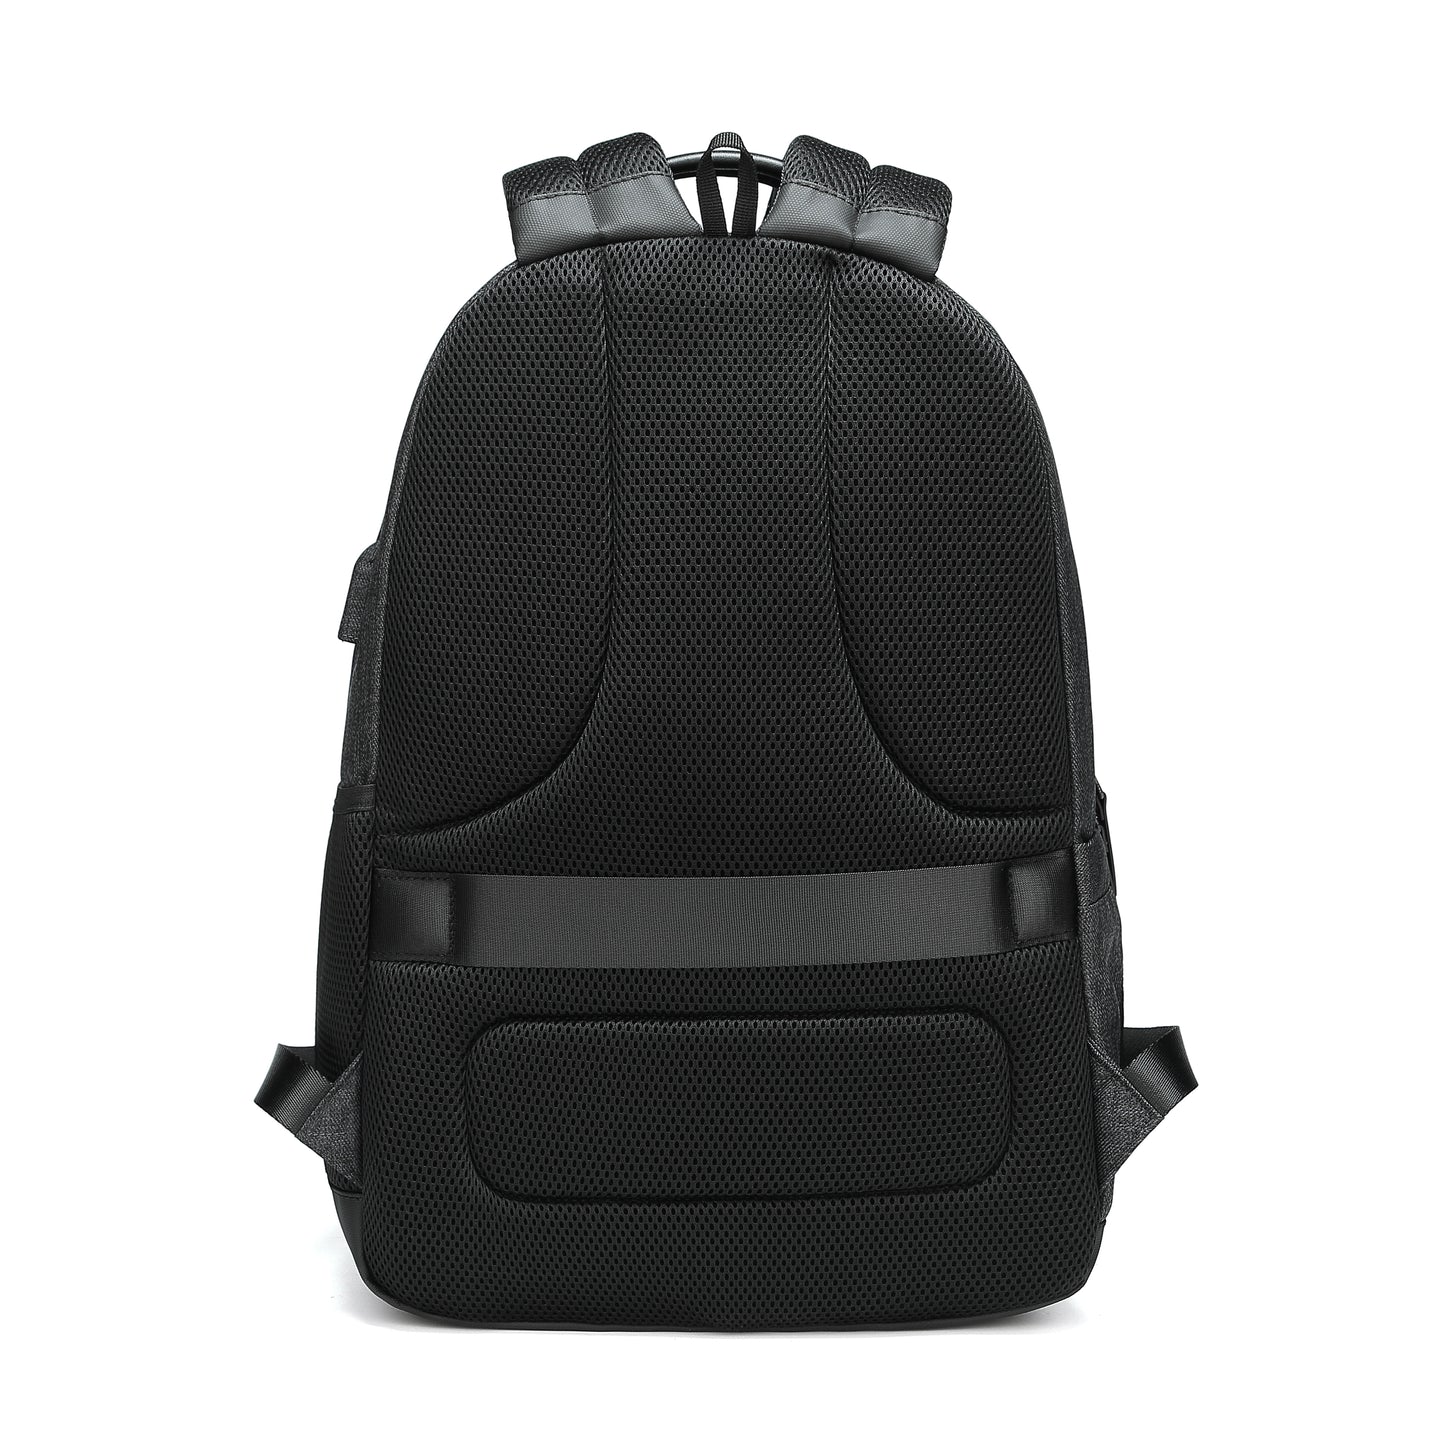 JANSBEN Laptop Backpack